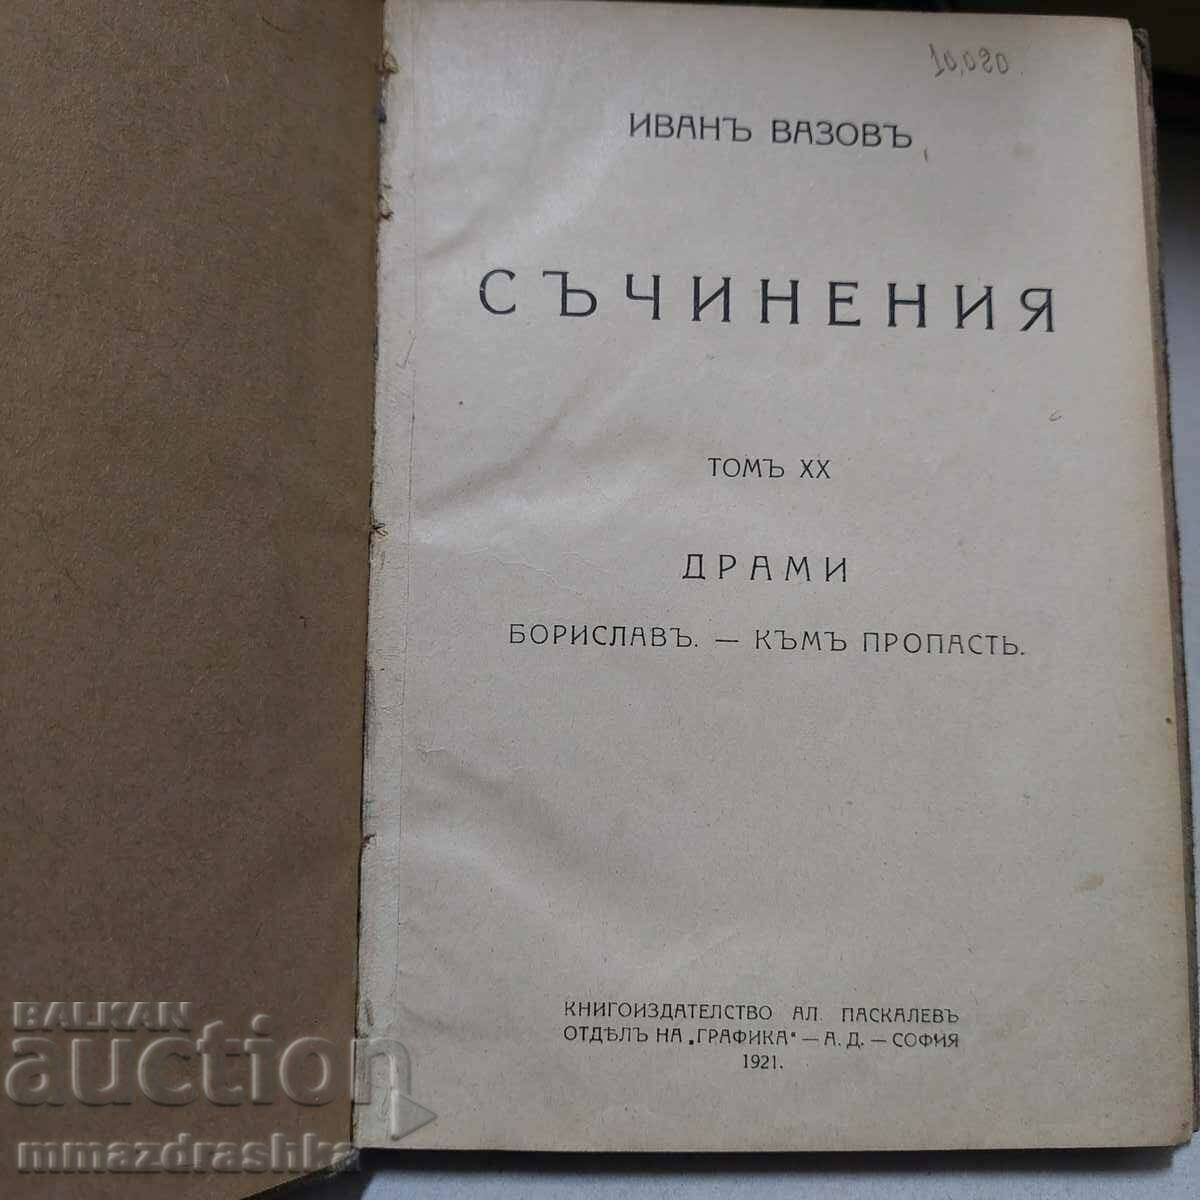 Ivan Vazov, 1921, volume 20